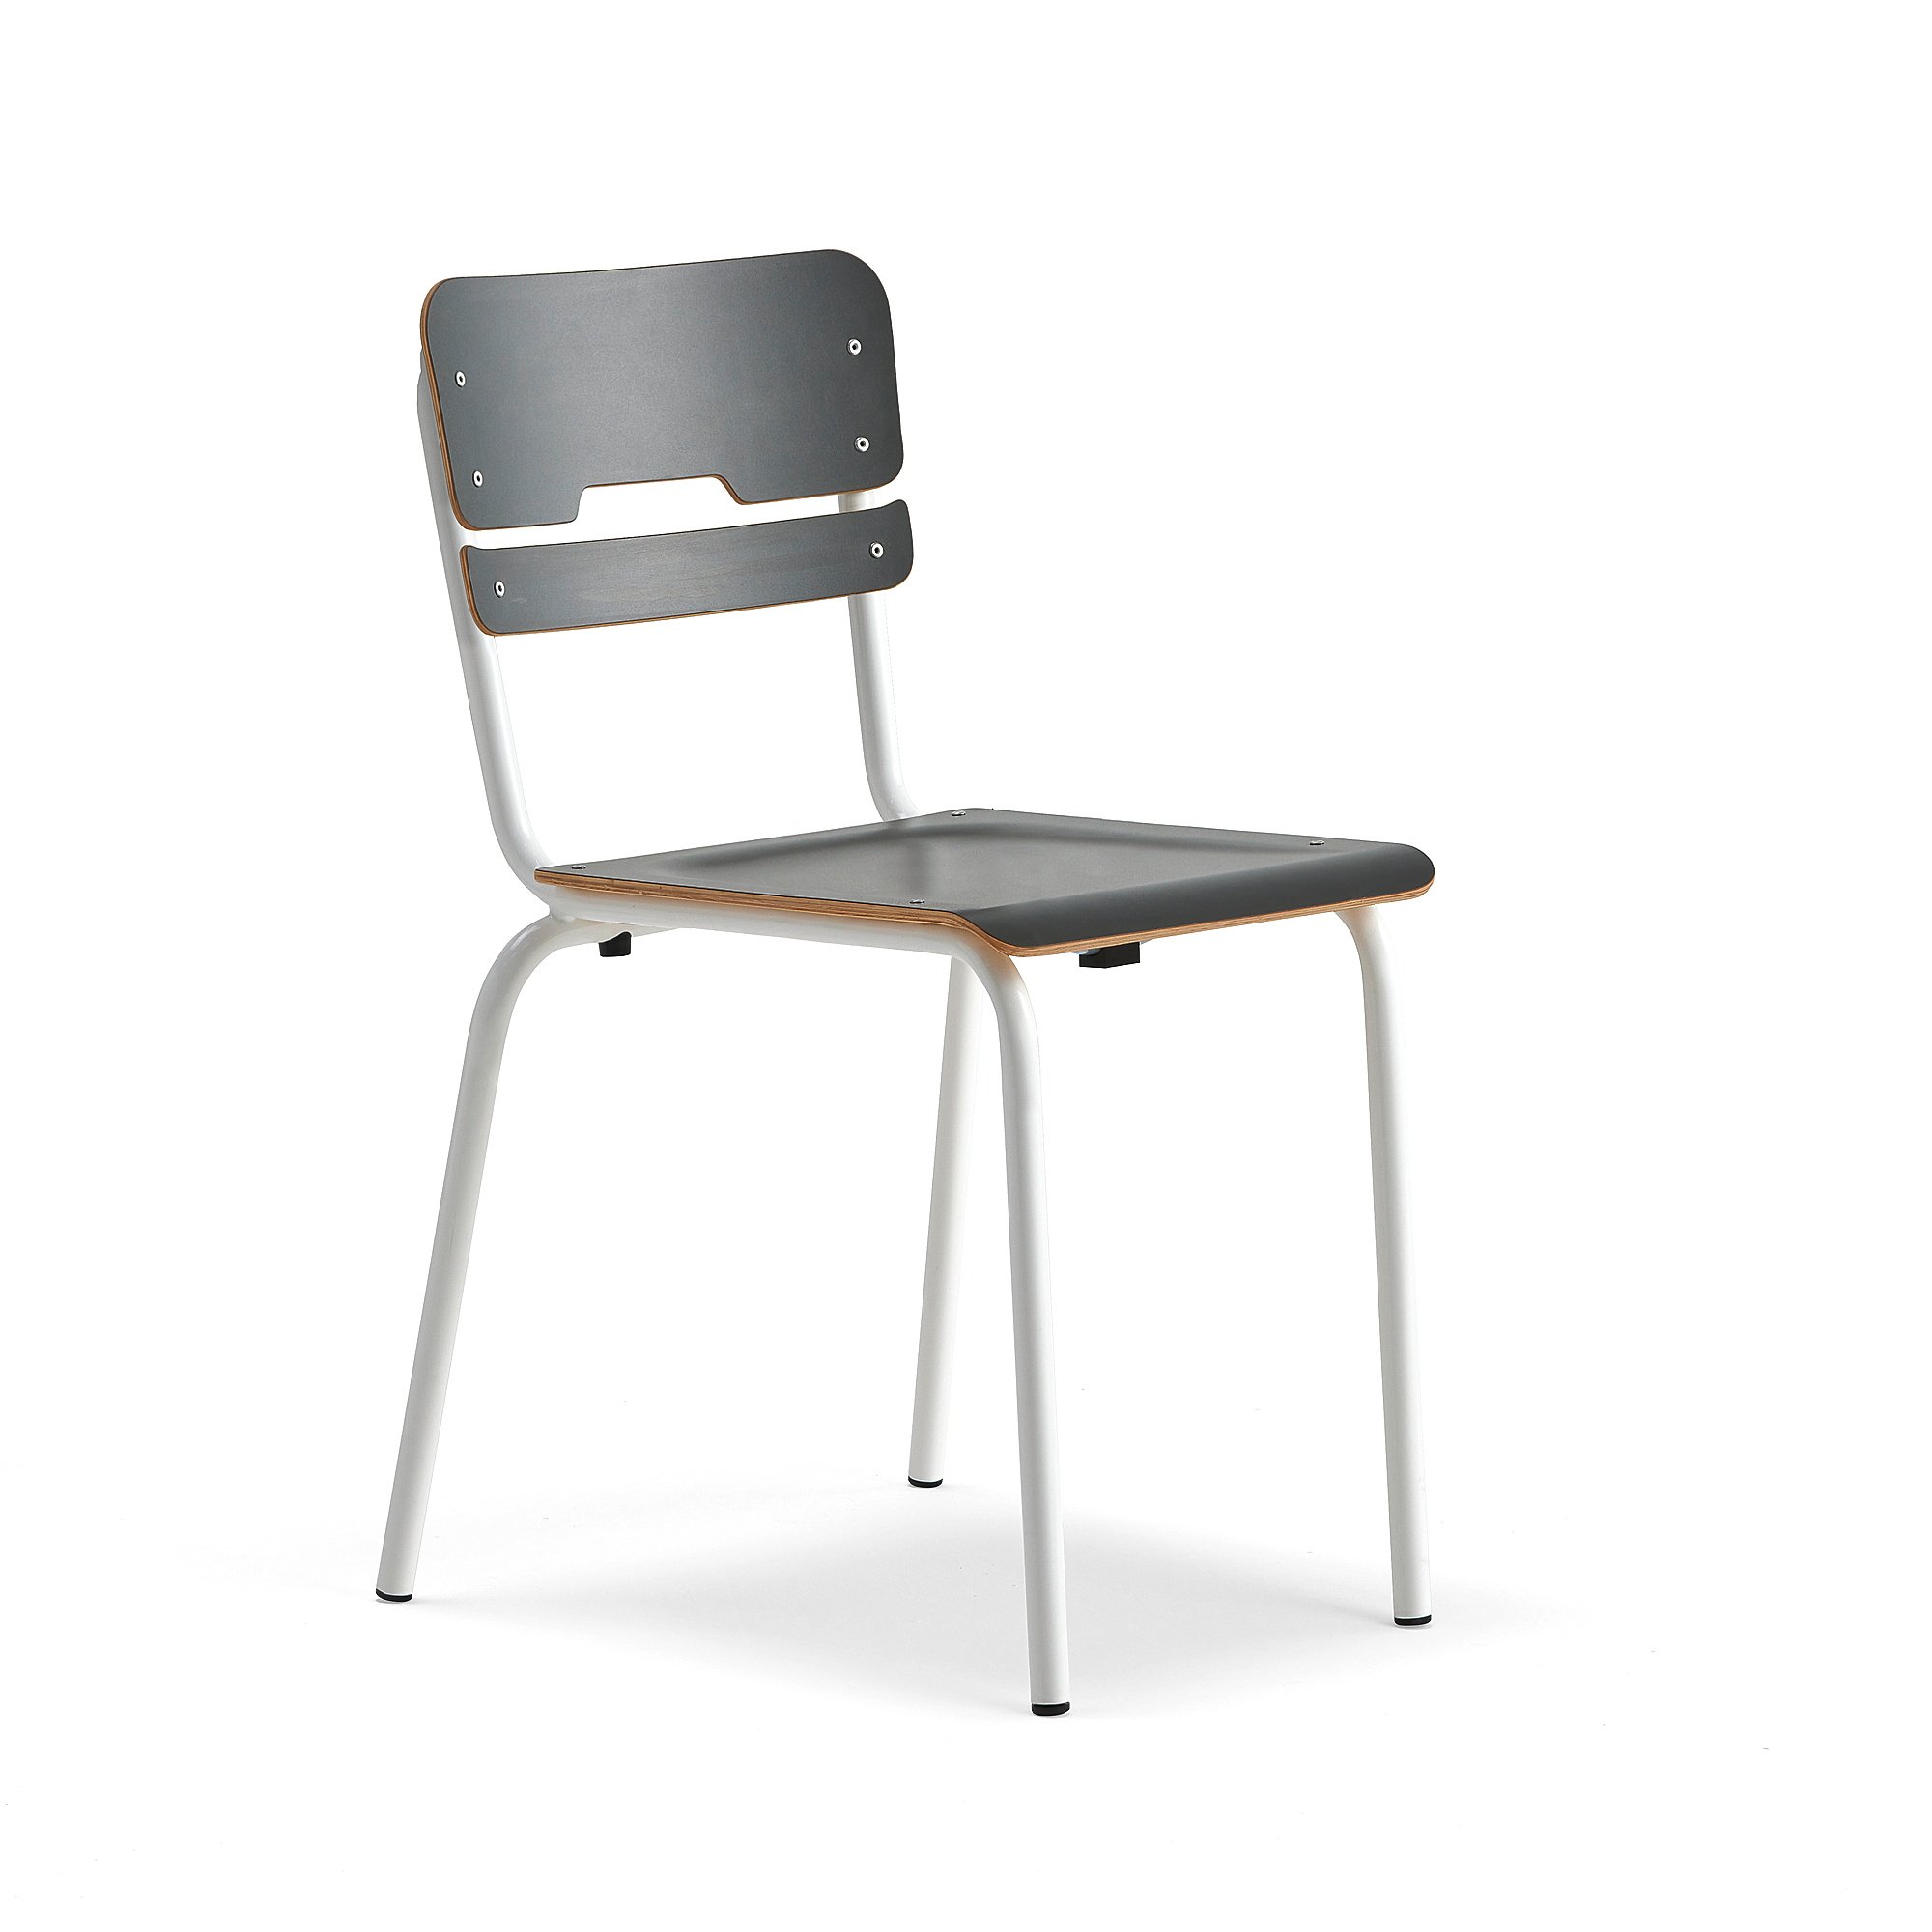 Školní židle SCIENTIA, sedák 390x390 mm, výška 460 mm, bílá/antracitová